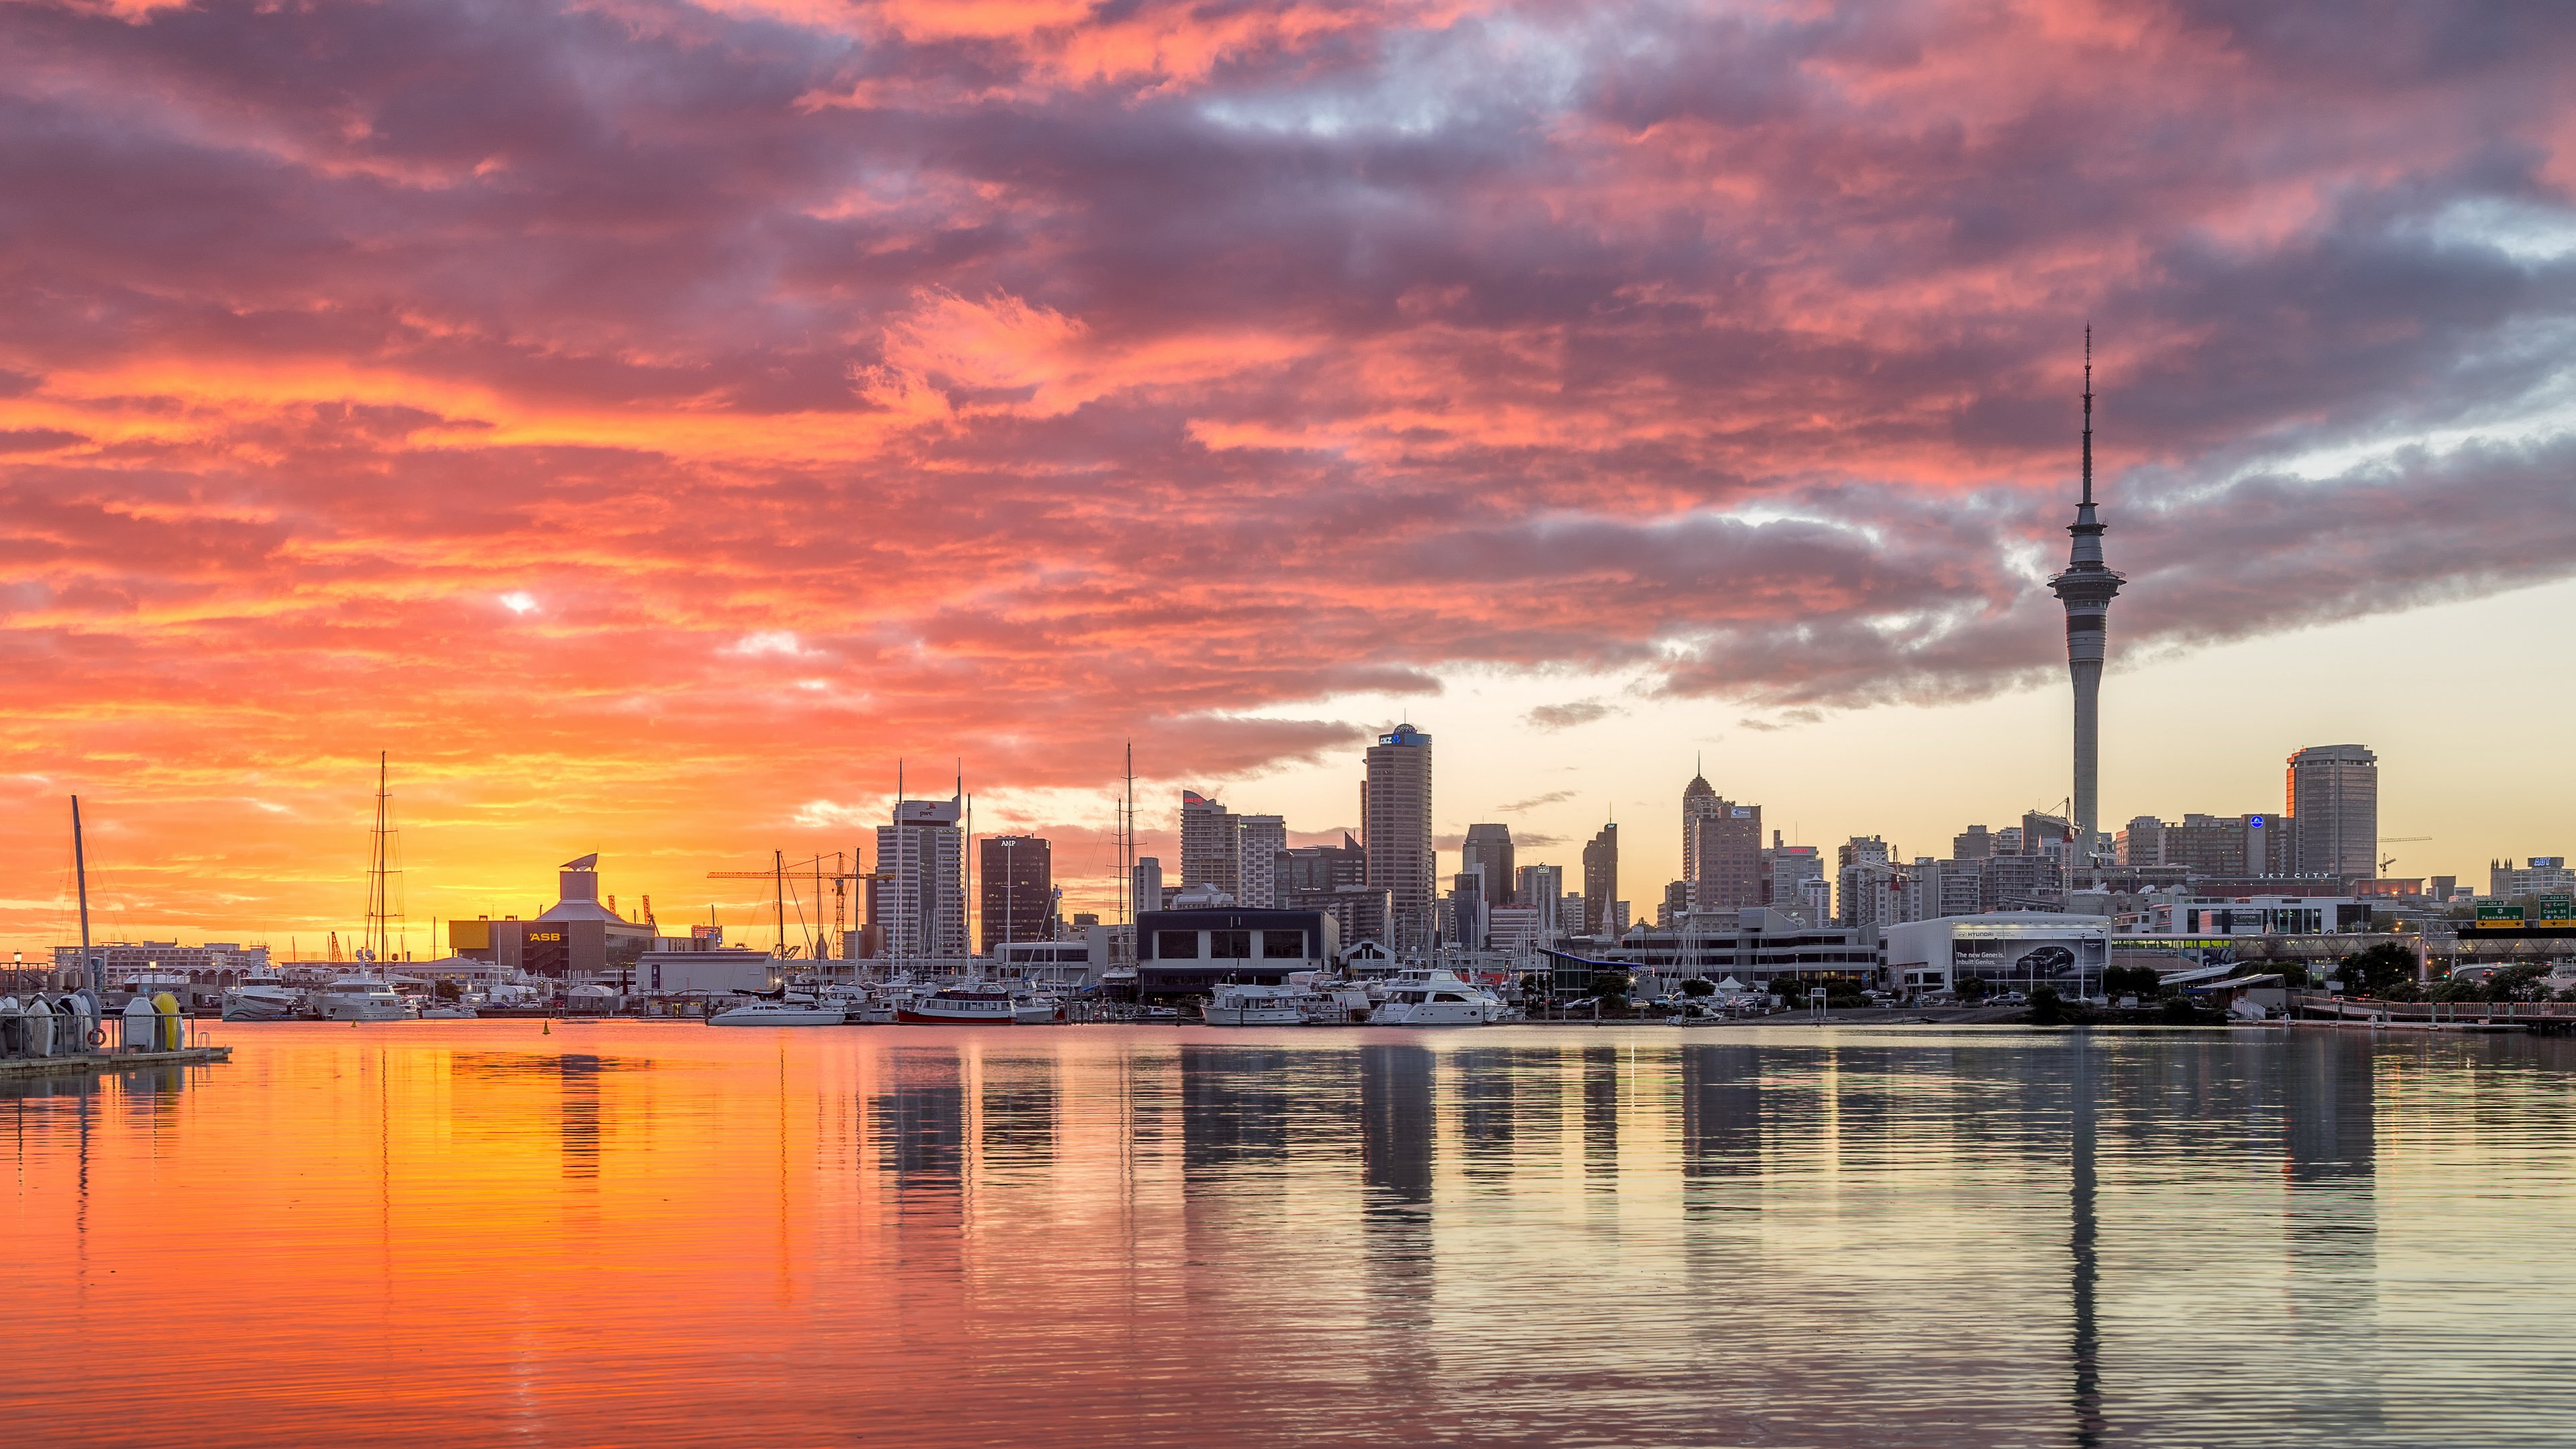 Auckland New Zealand City Sunset - Auckland - 3840x2160 Wallpaper -  